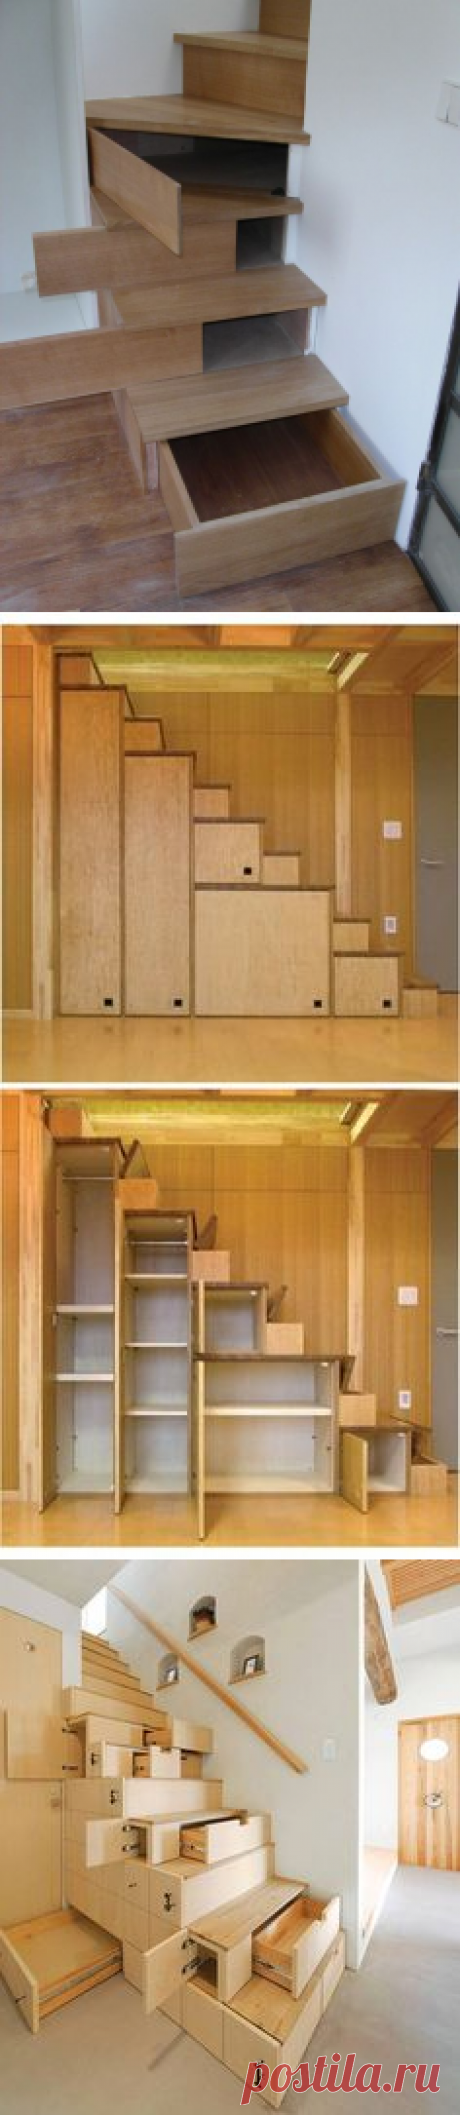 (21) Hidden Storage In Stairs - https://www.stashvault.com/hidden-storage-in-stairs-2/ | STORAGE